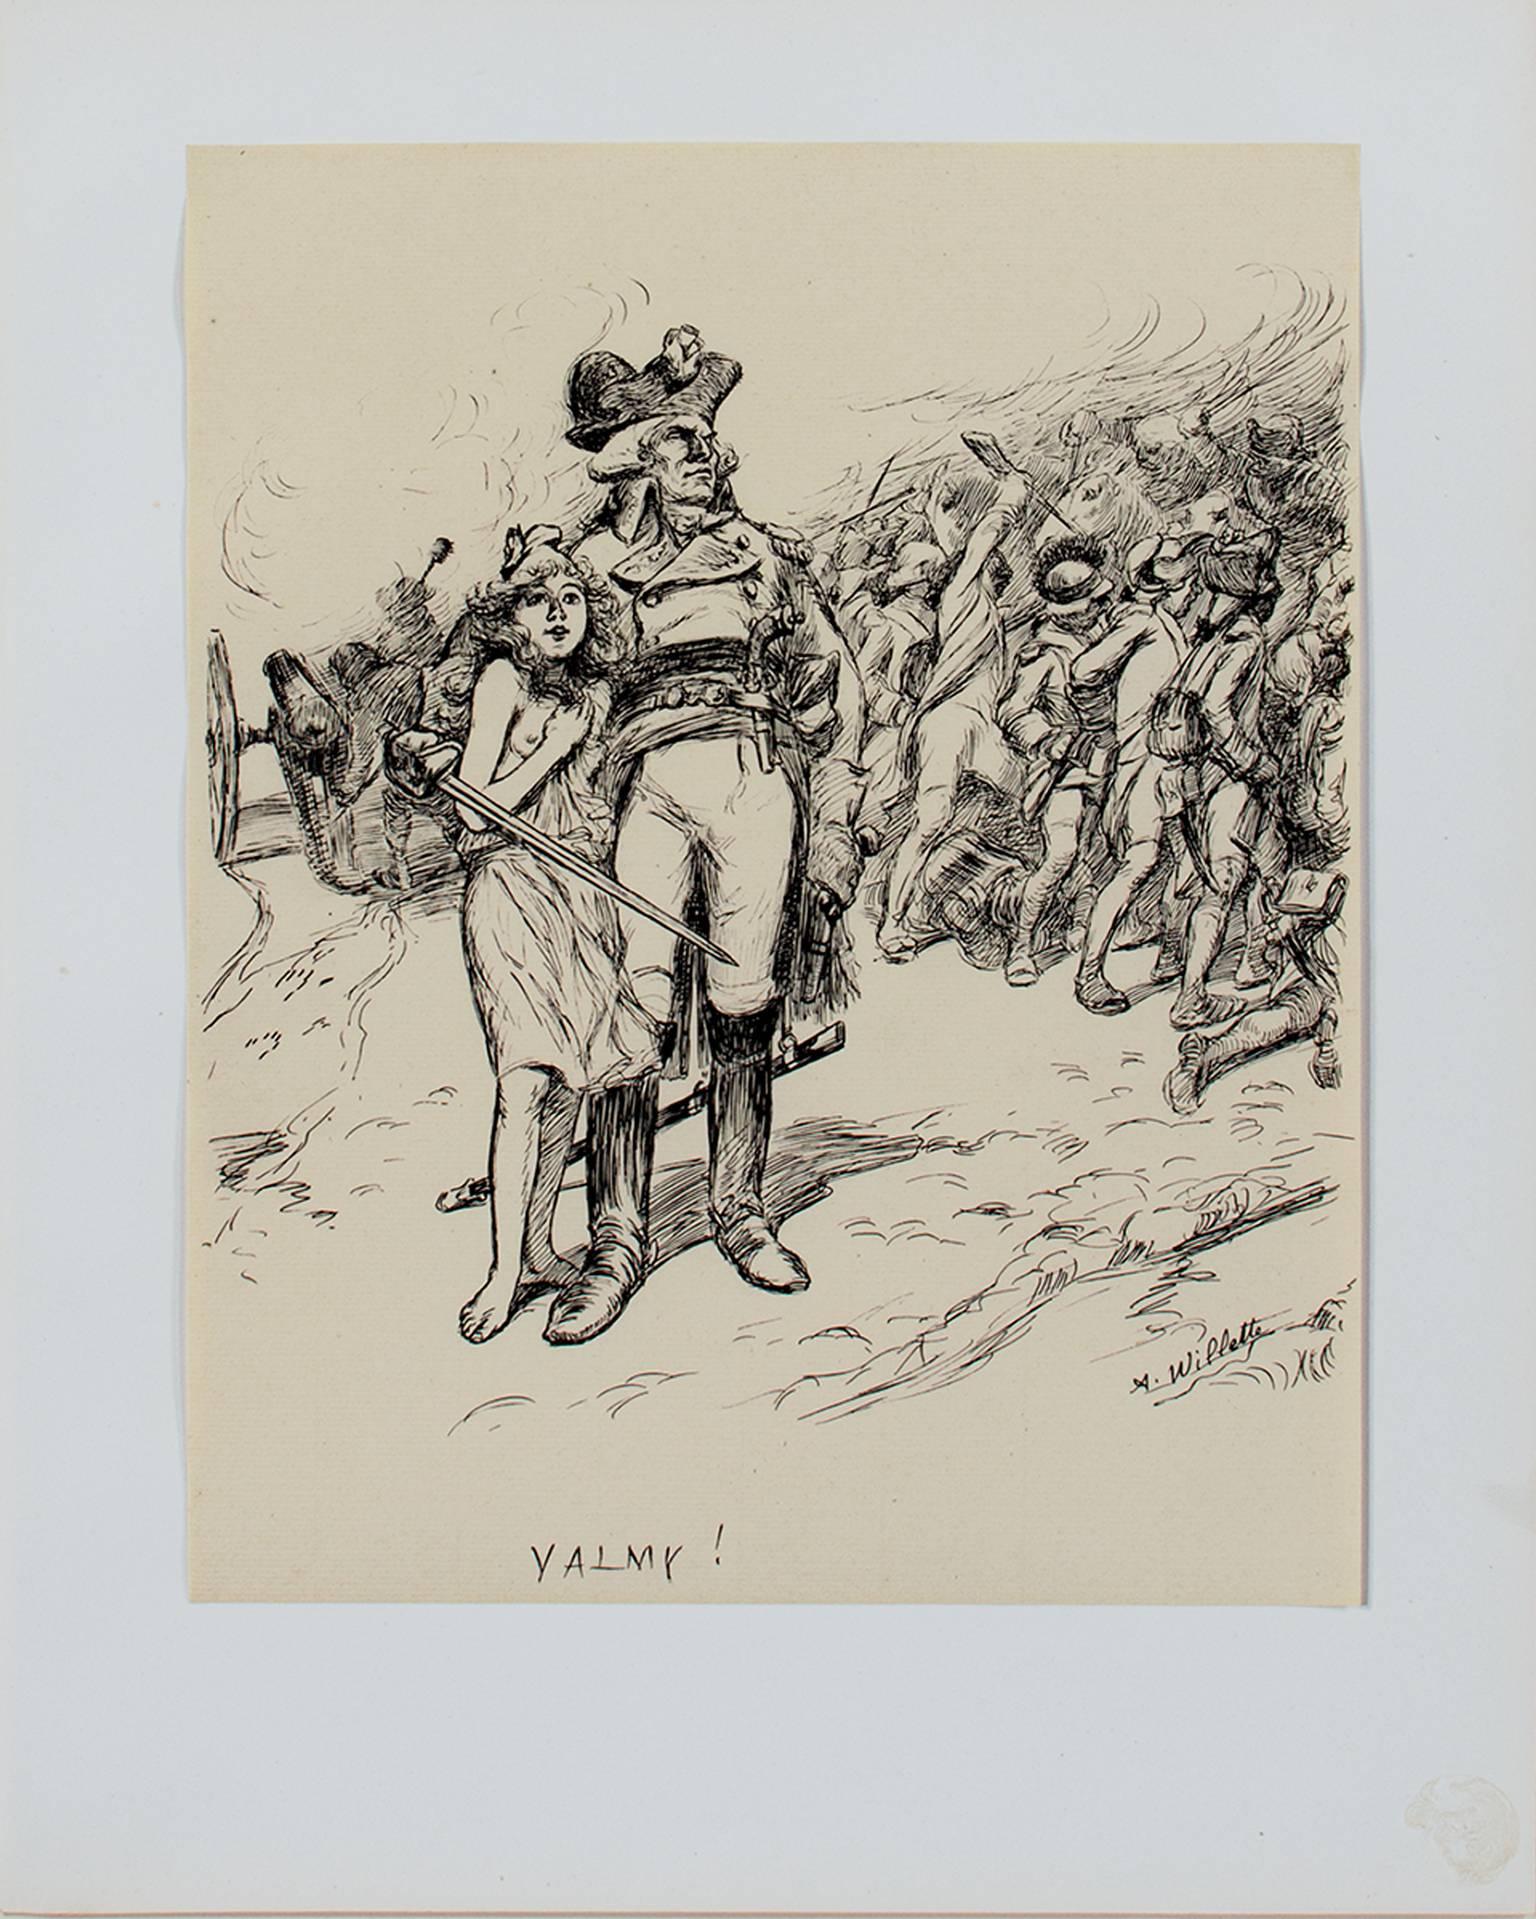 "VALMY ! (L'Estampe Moderne)" est une épreuve filigranée PL BAS d'après un dessin d'Adolphe Willette. Elle représente un général avec son armée et une jeune fille. 

15 3/4" x 12" art
cadre de 23" x 19 1/4

Adolphe Léon Willette (30 juillet 1857 - 4